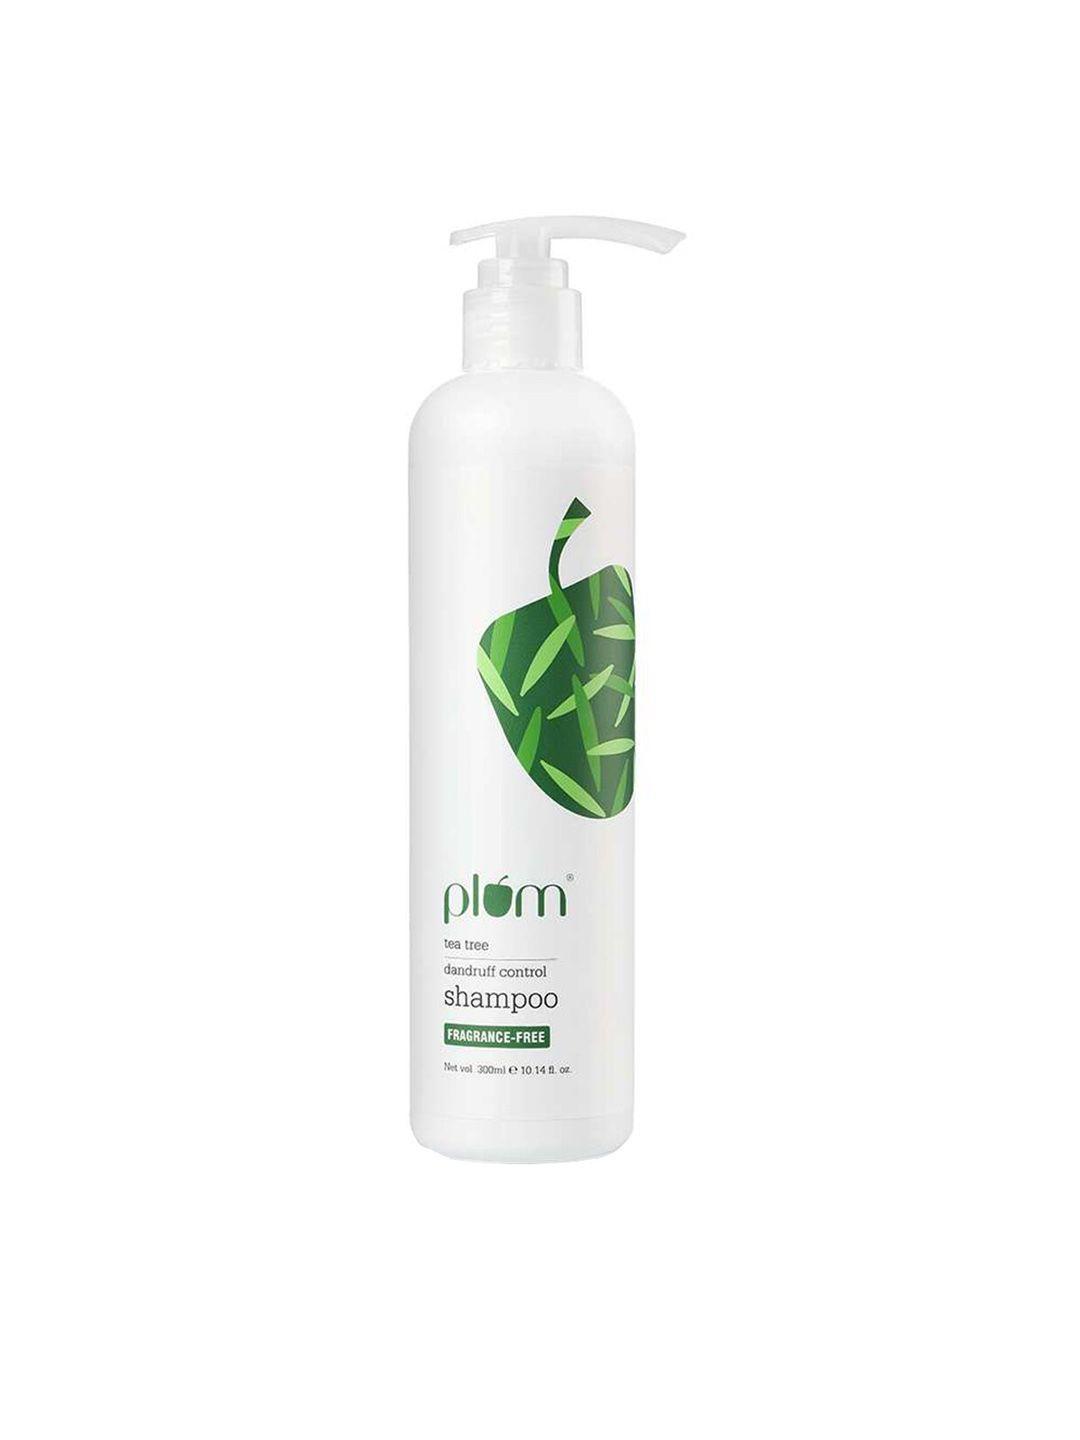 plum tea tree anti-dandruff shampoo - 300 ml